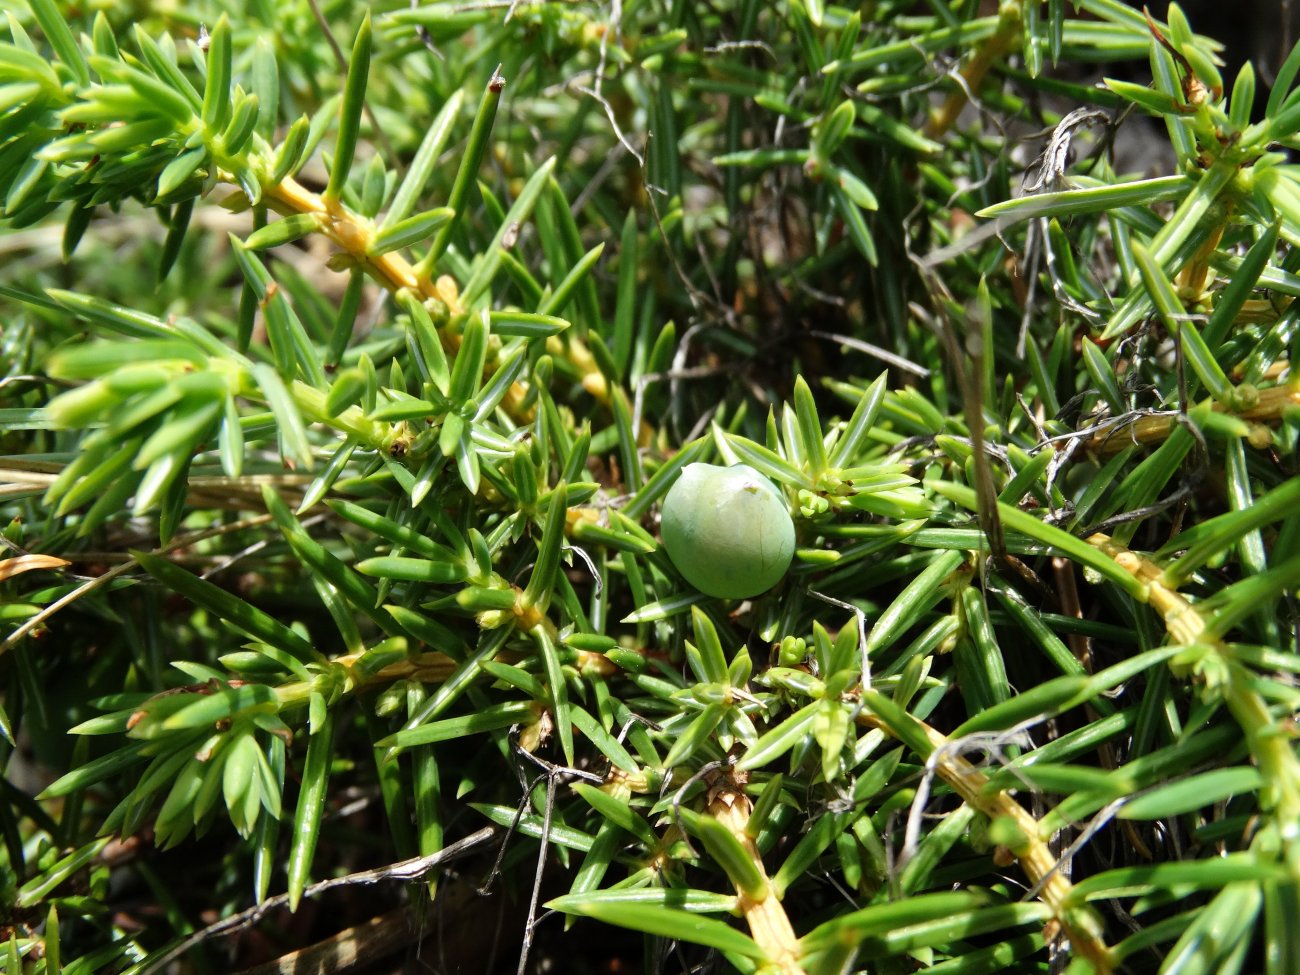 Image of Juniperus rigida ssp. litoralis specimen.